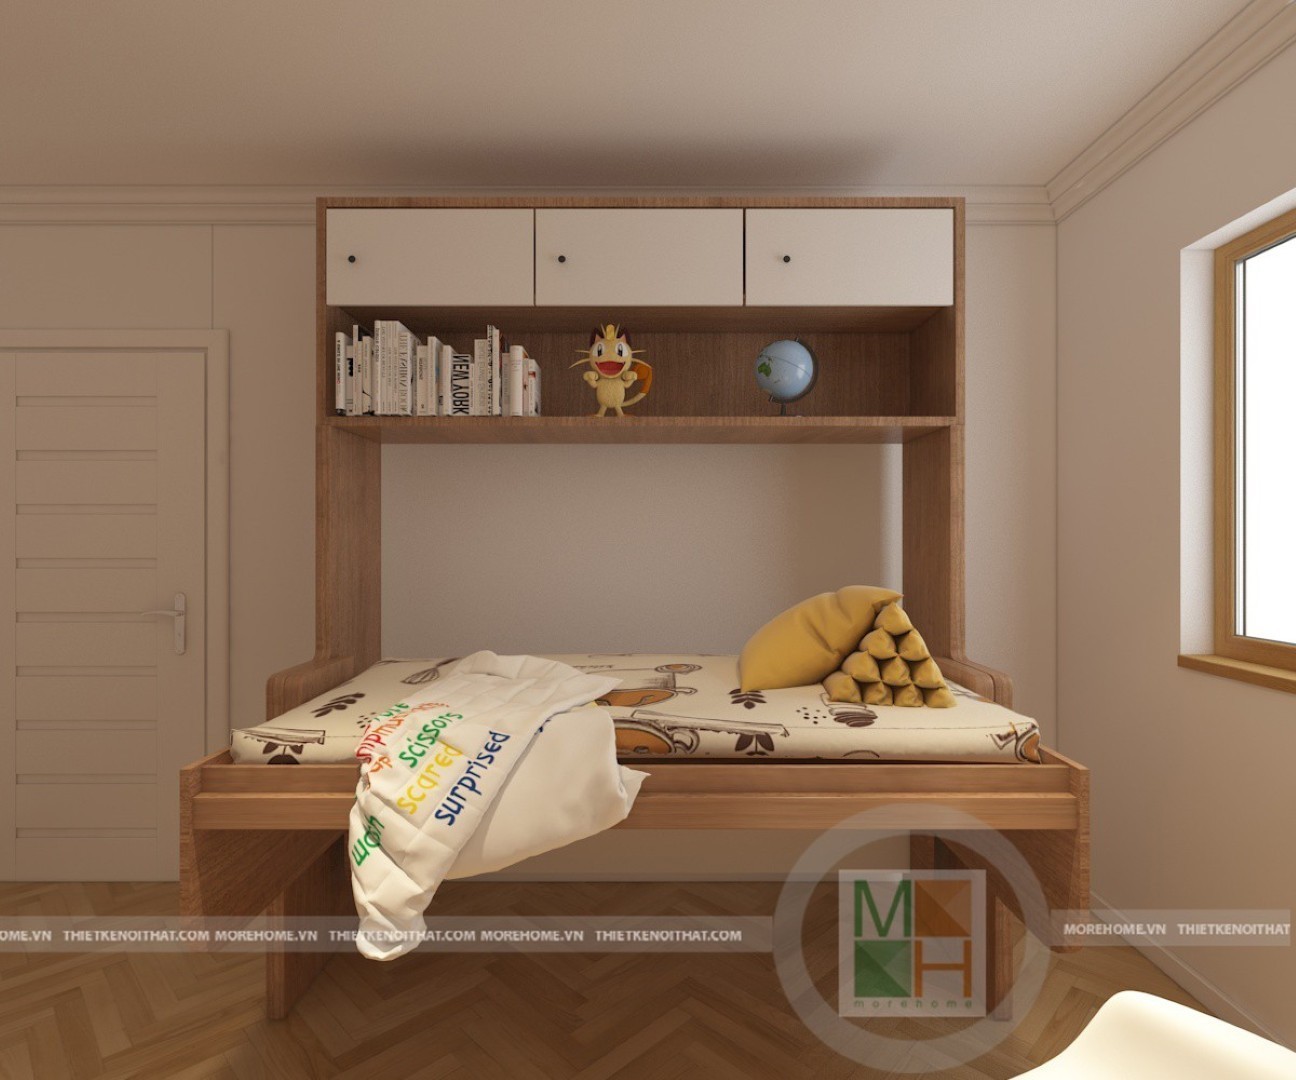 Trang trí phòng ngủ nhỏ với mẫu giường thông minh